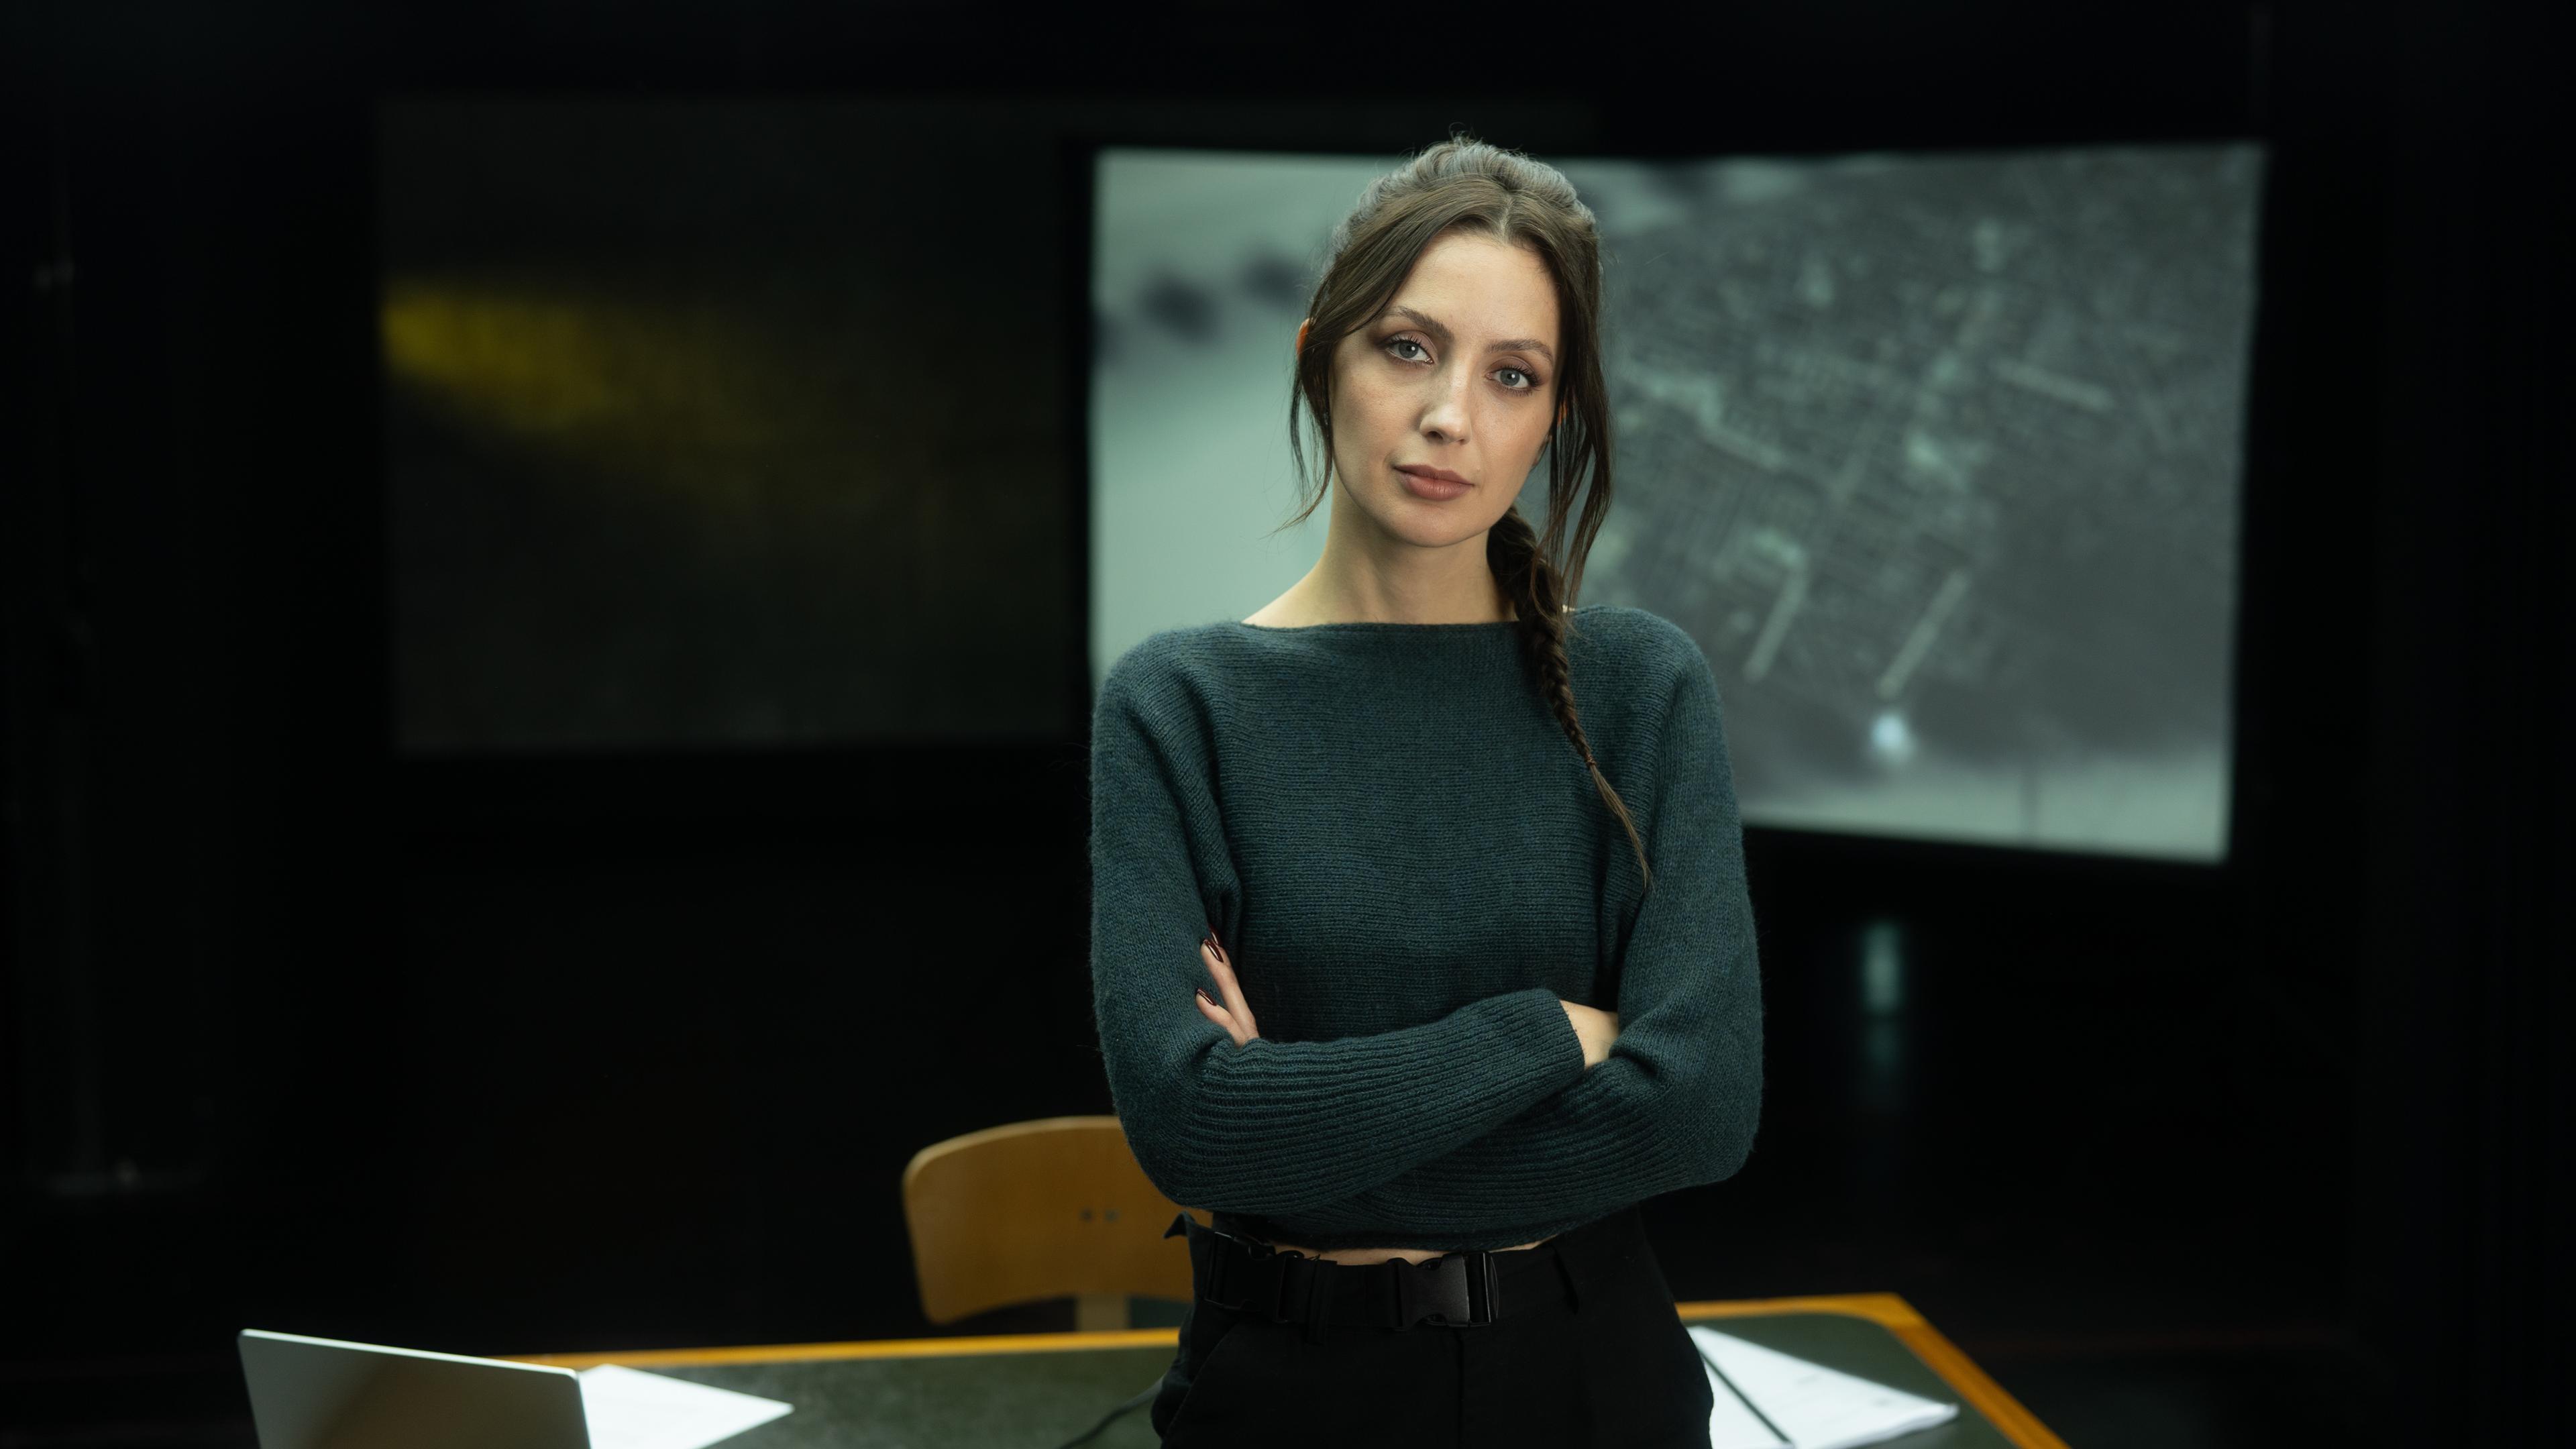  Paulina Krasa steht vor einem Schreibtisch in einem dunklen Studio.